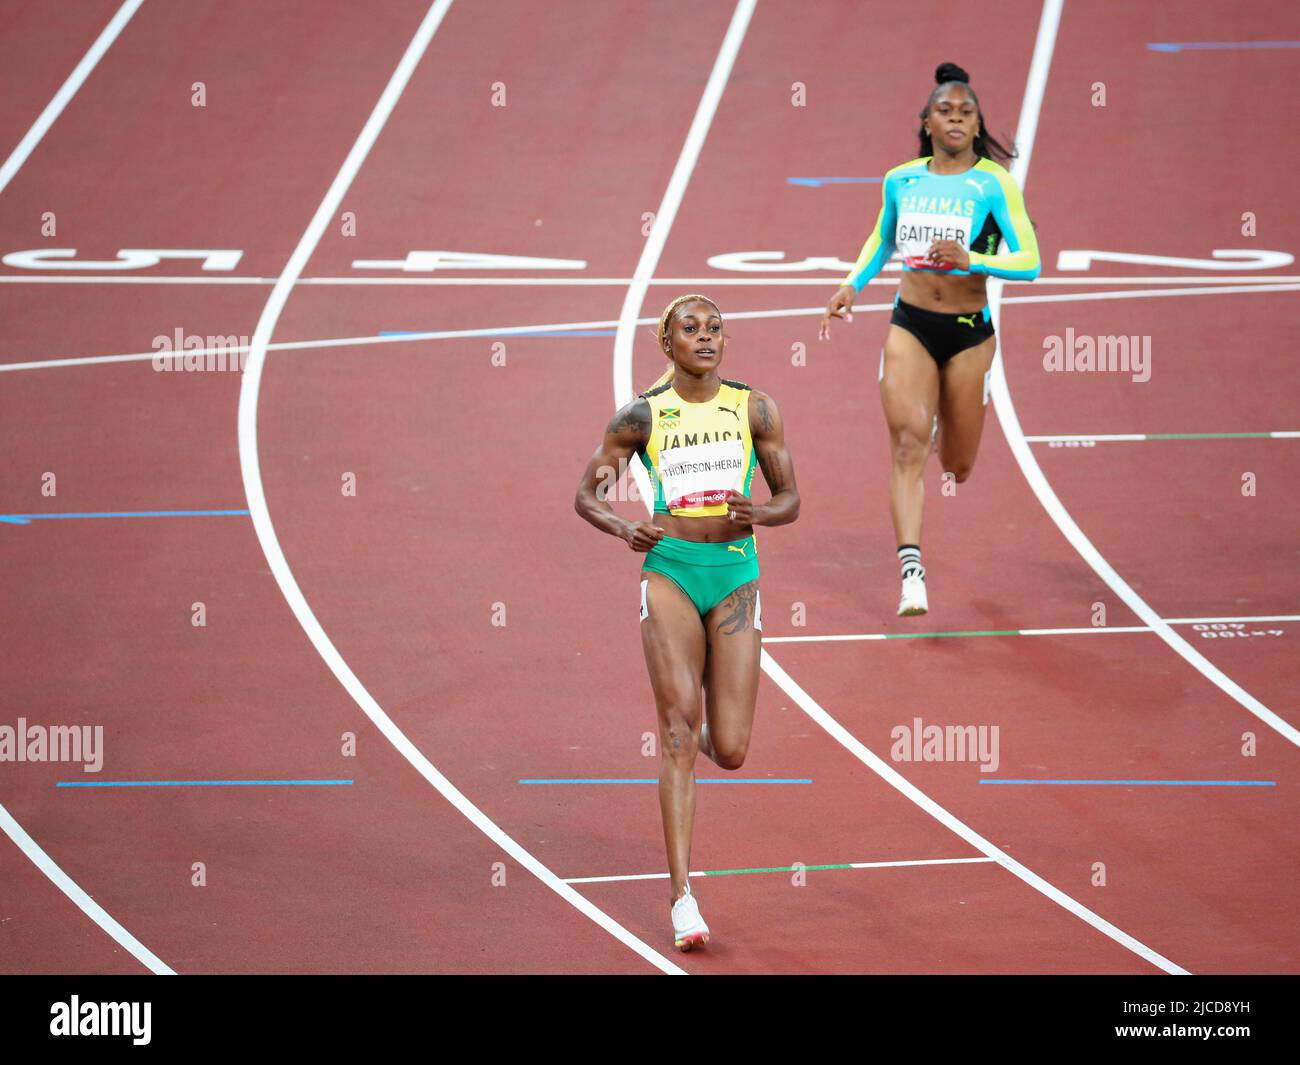 31st JUILLET 2021 - TOKYO, JAPON: Elaine Thompson-Herah de la Jamaïque et Tynia Gaither des Bahamas en action pendant les demi-finales des femmes de 100m au Tok Banque D'Images